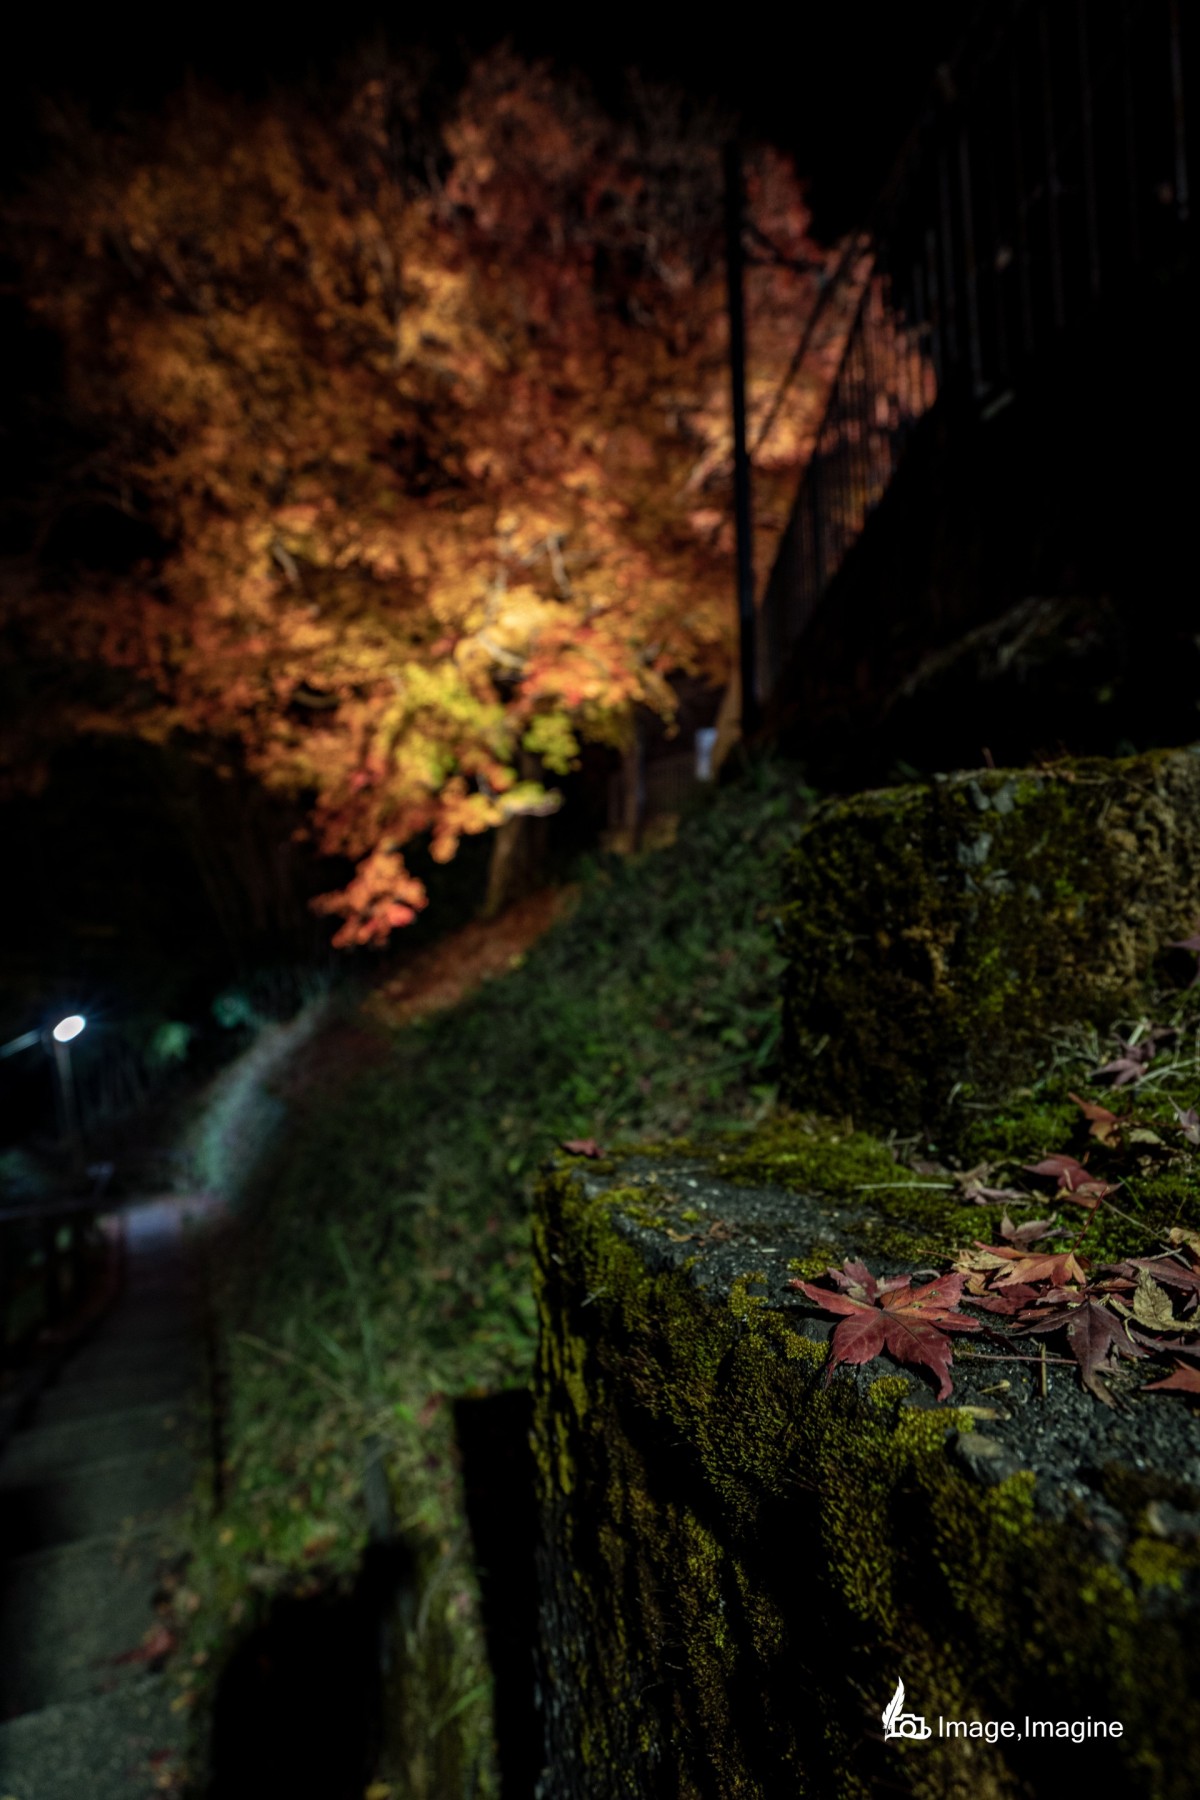 夜の街にて、コケの生えたコンクリートに落ちた紅葉の葉を撮影した写真。また写真の奥にはライトアップされた大きな紅葉の木がある。